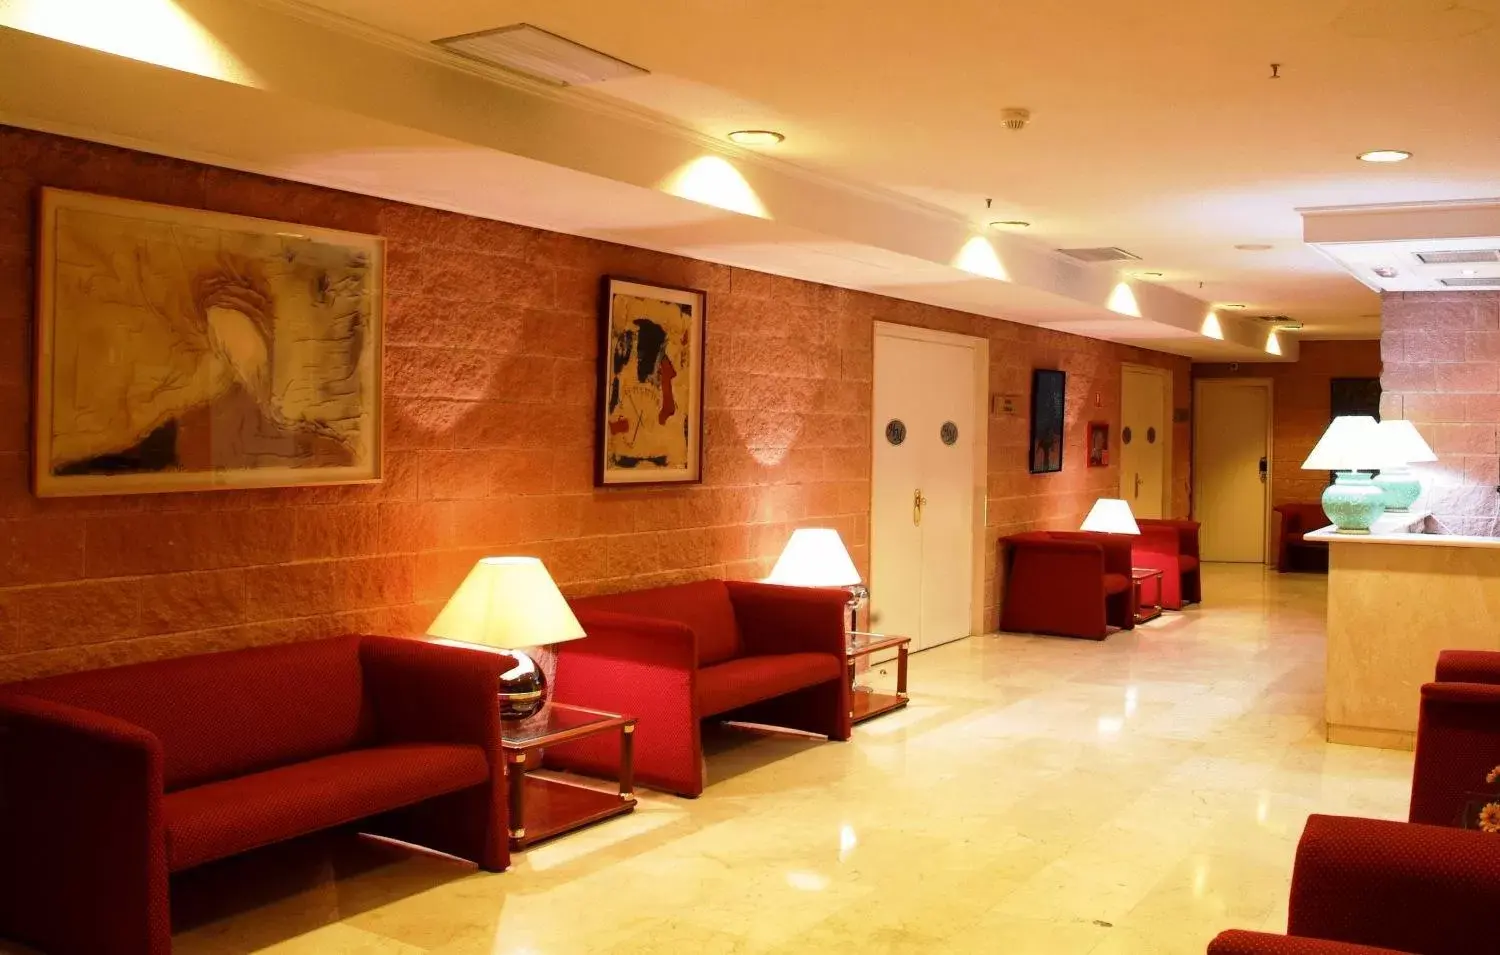 Lobby or reception, Lobby/Reception in Hotel Majadahonda